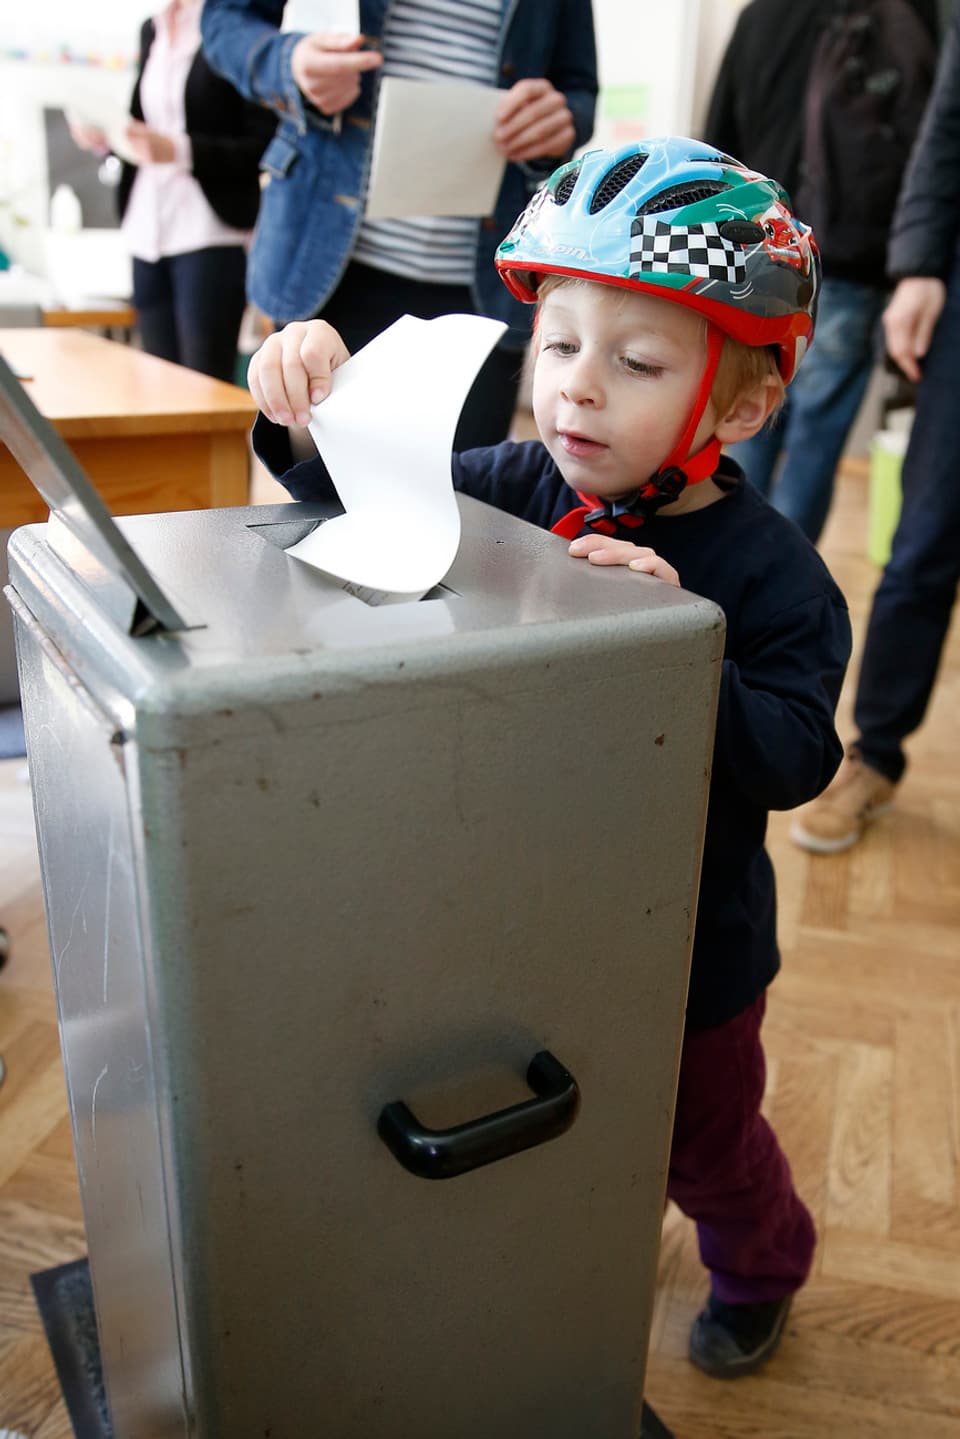 Kind mit Velohelm steht vor einer Wahlurne und lässt einen Wahlzettel in den Schlitz fallen